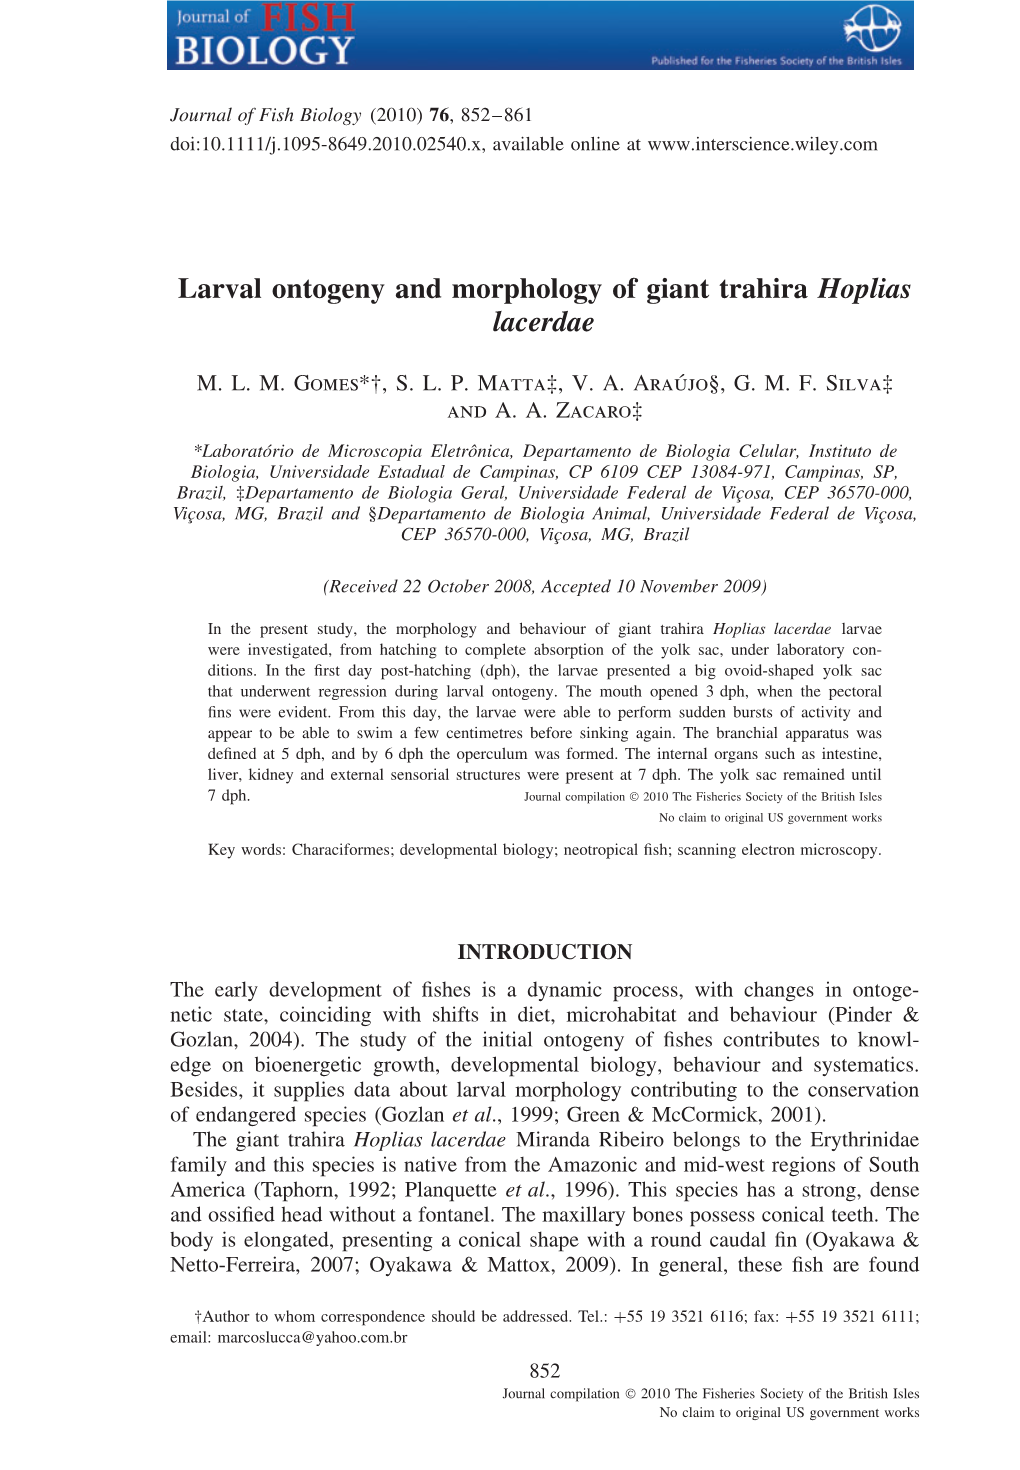 Larval Ontogeny and Morphology of Giant Trahira Hoplias Lacerdae